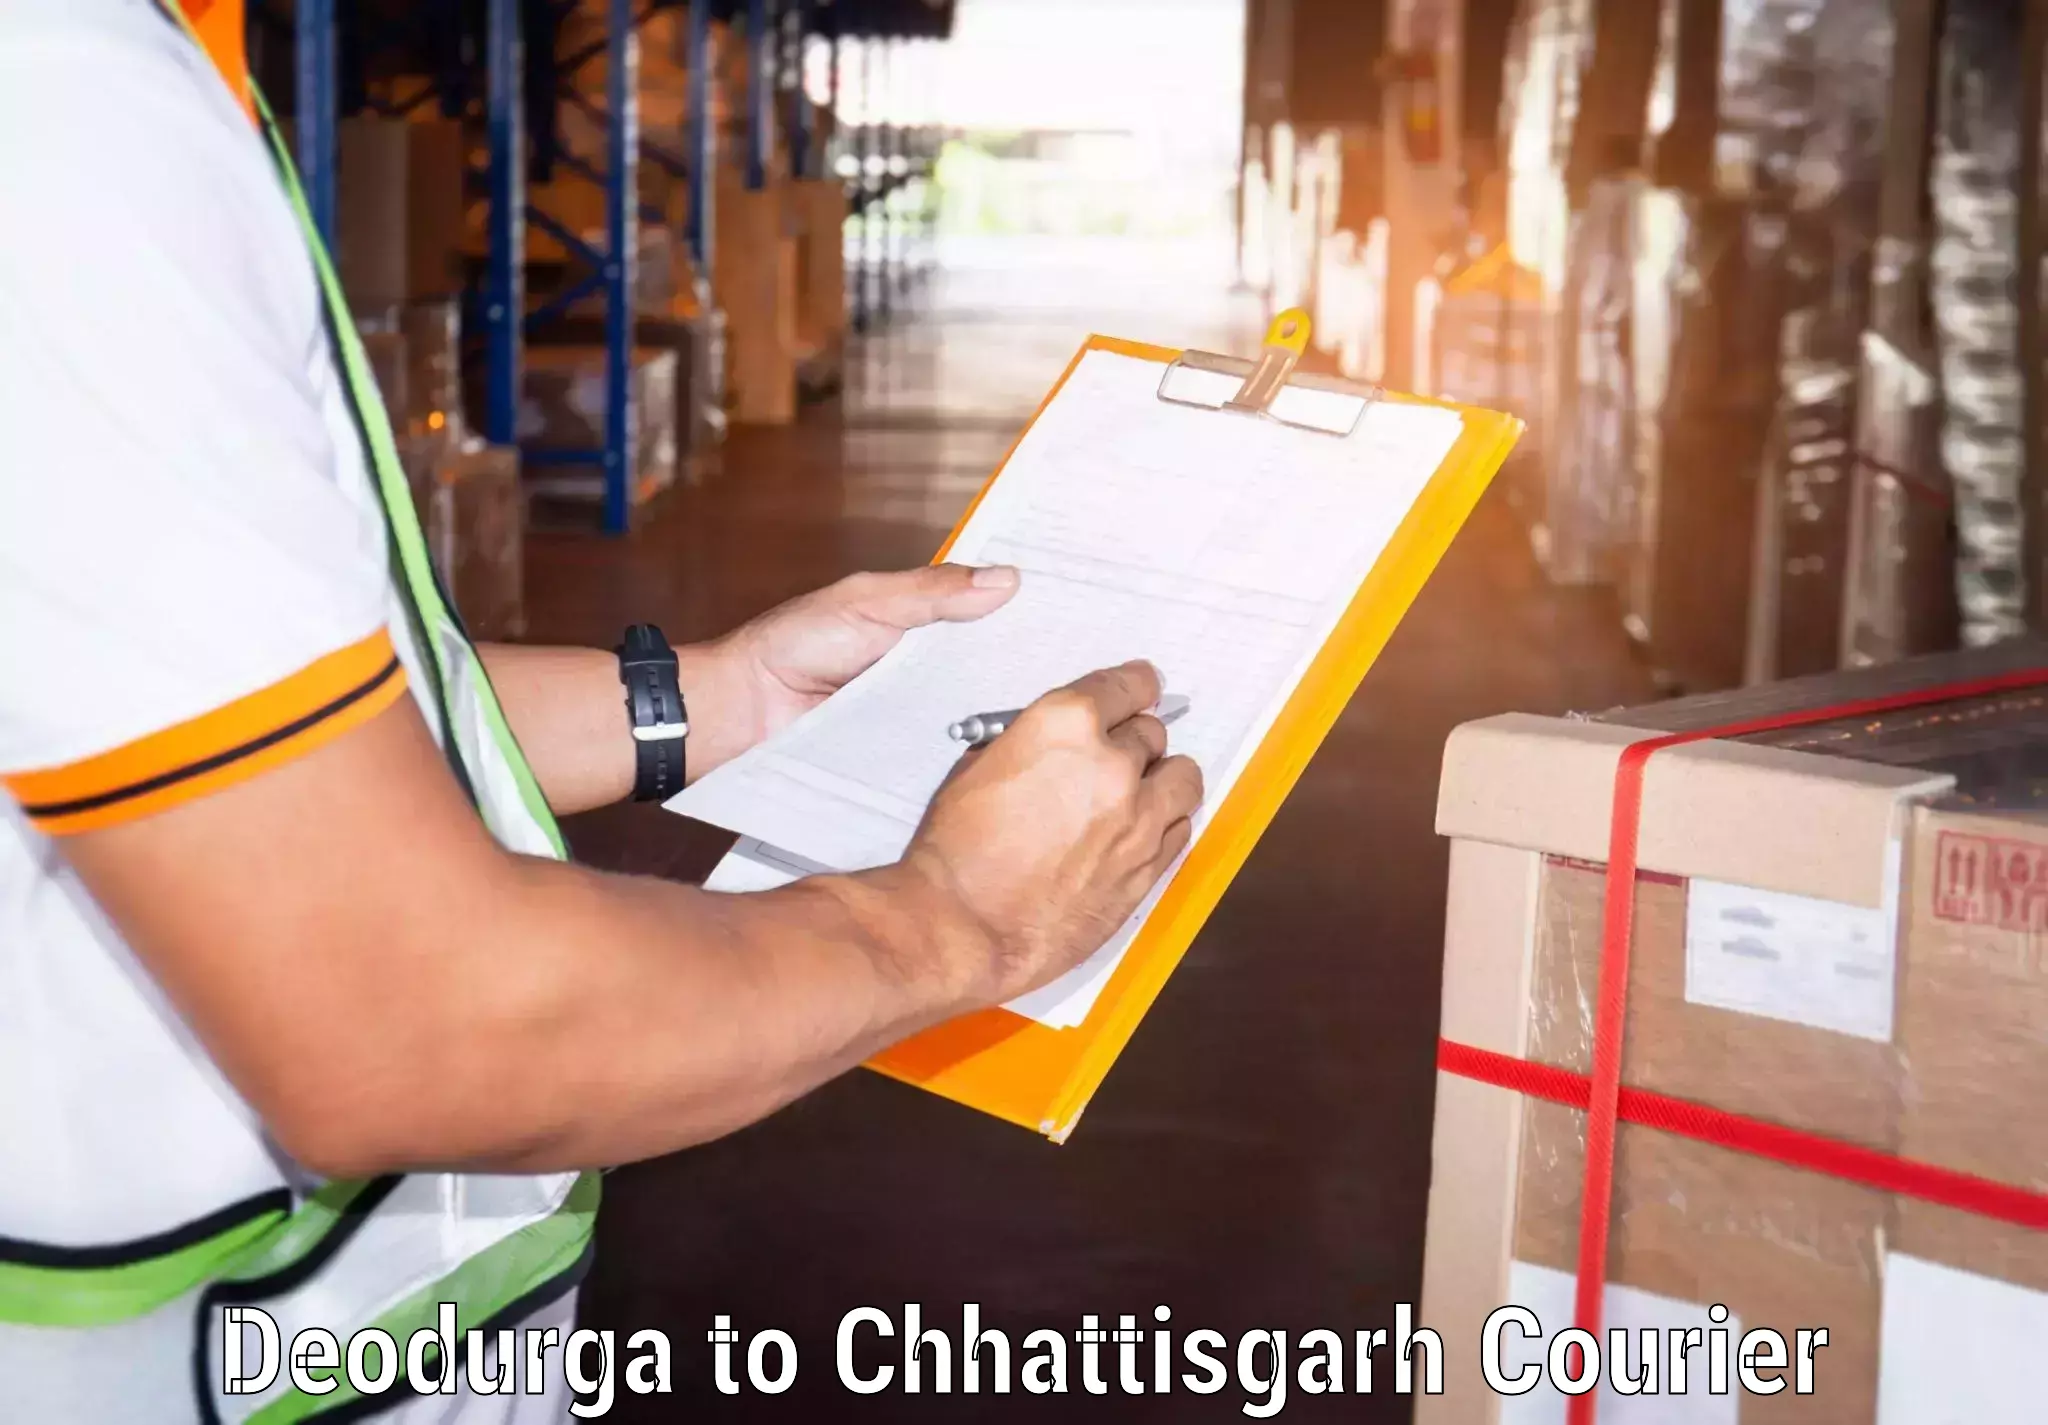 Rural area delivery Deodurga to Bijapur Chhattisgarh